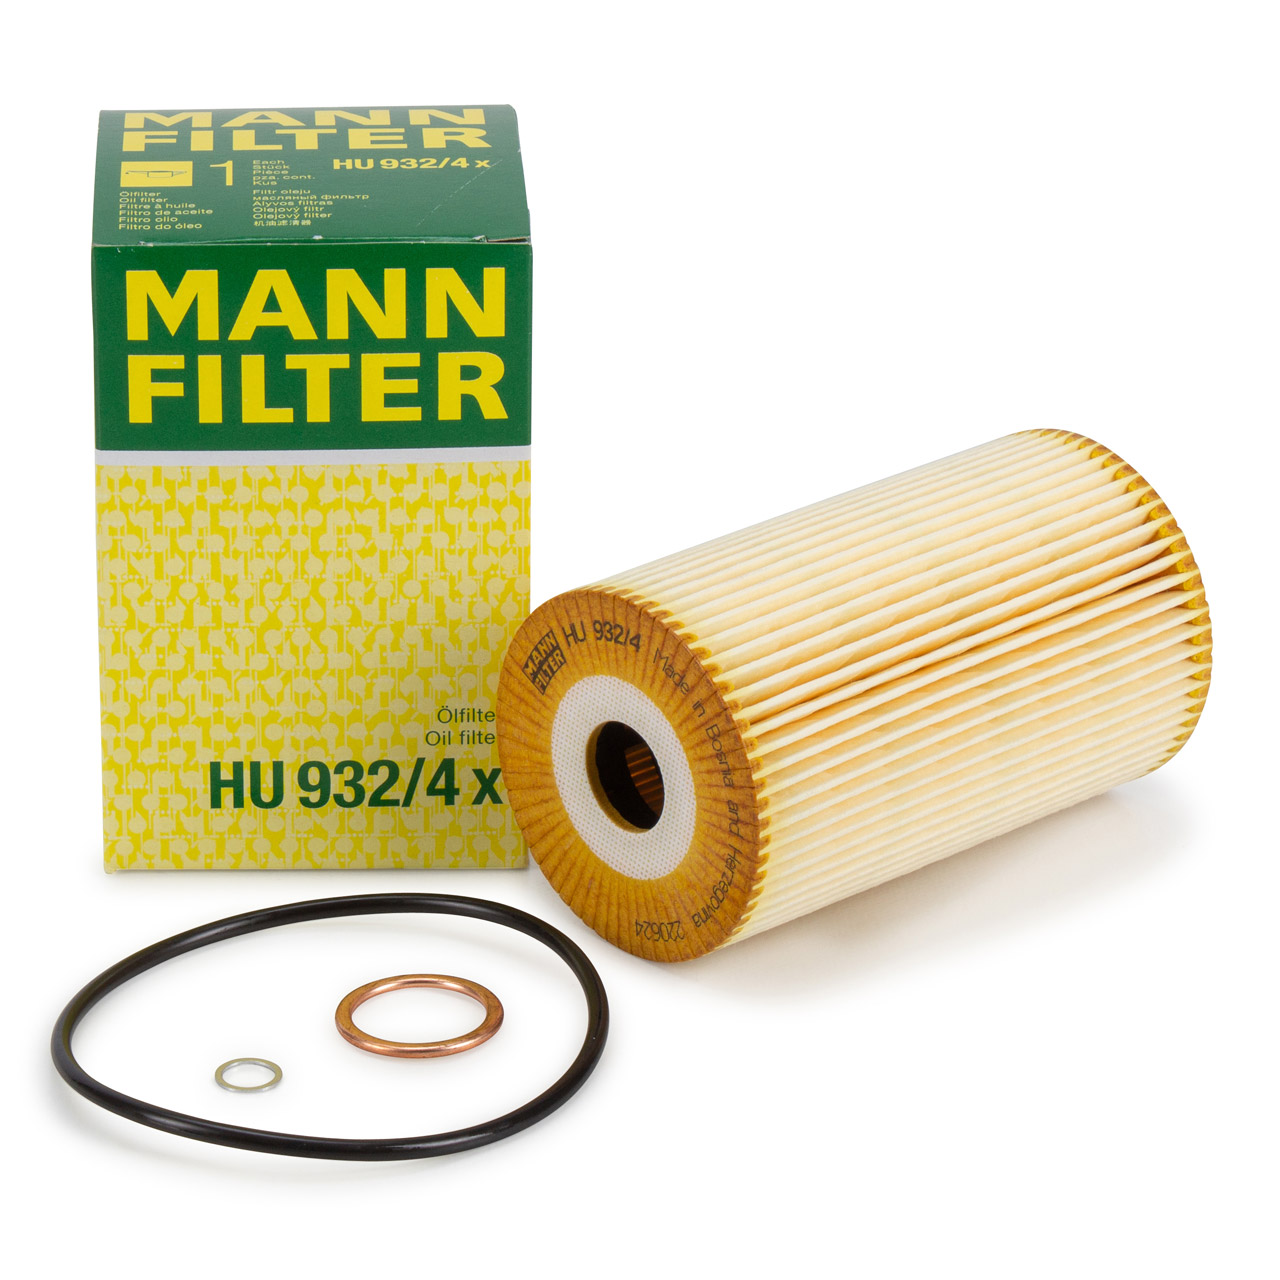 Filter und Werkzeug für Ölwechsel an allen 1.9/2.0 TDI Motoren mit  Filterpatrone